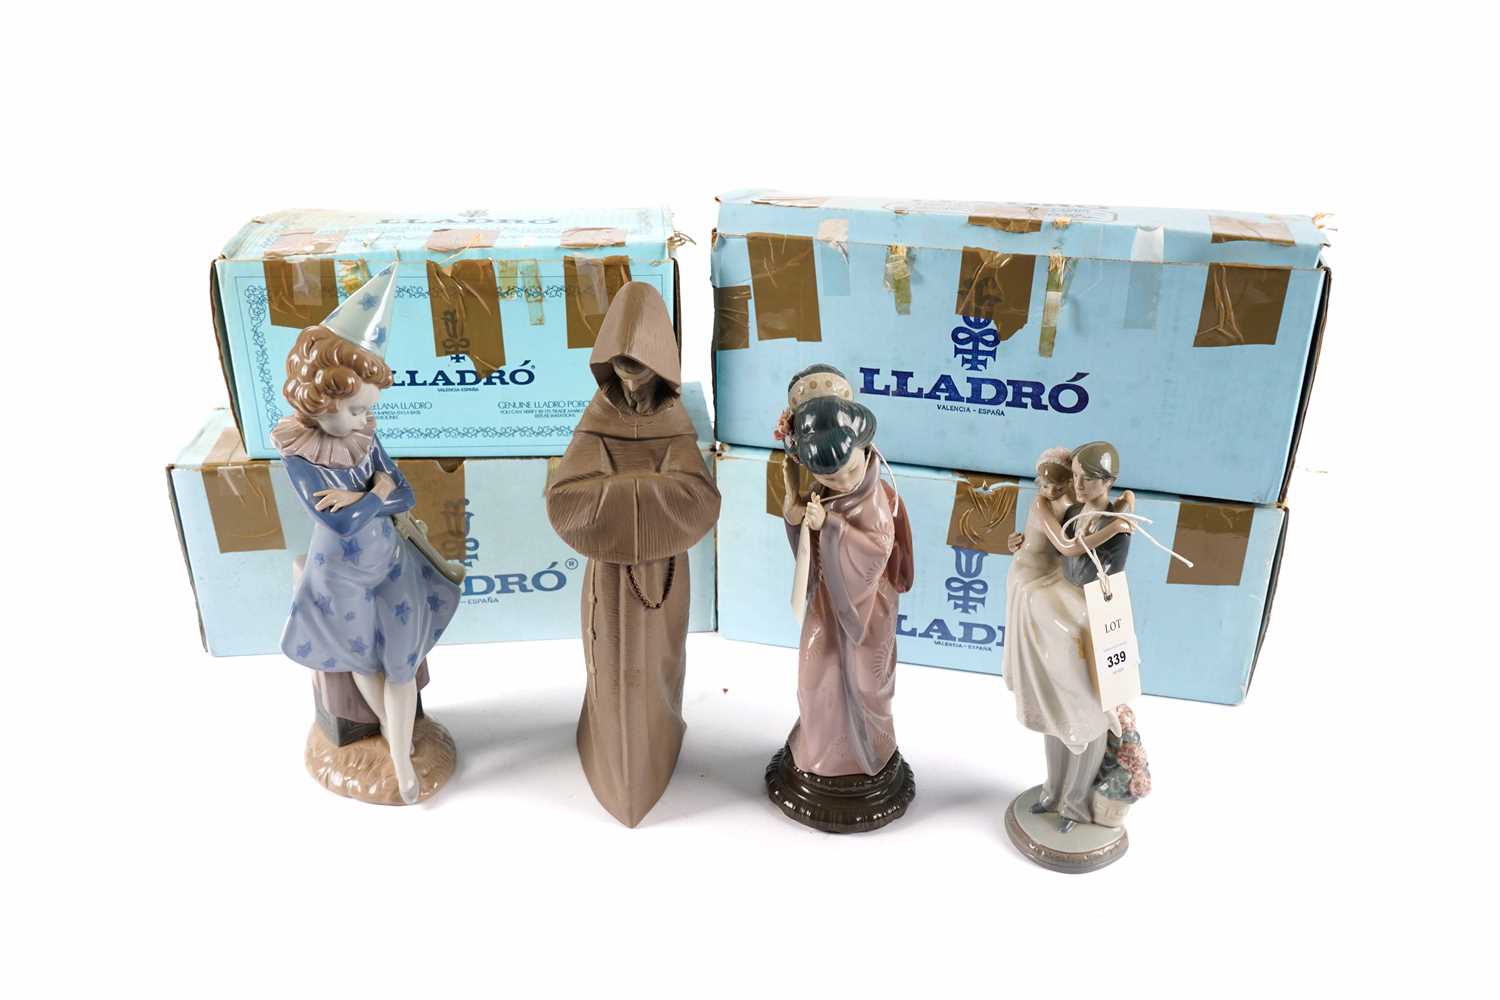 Four Lladro ceramic figures